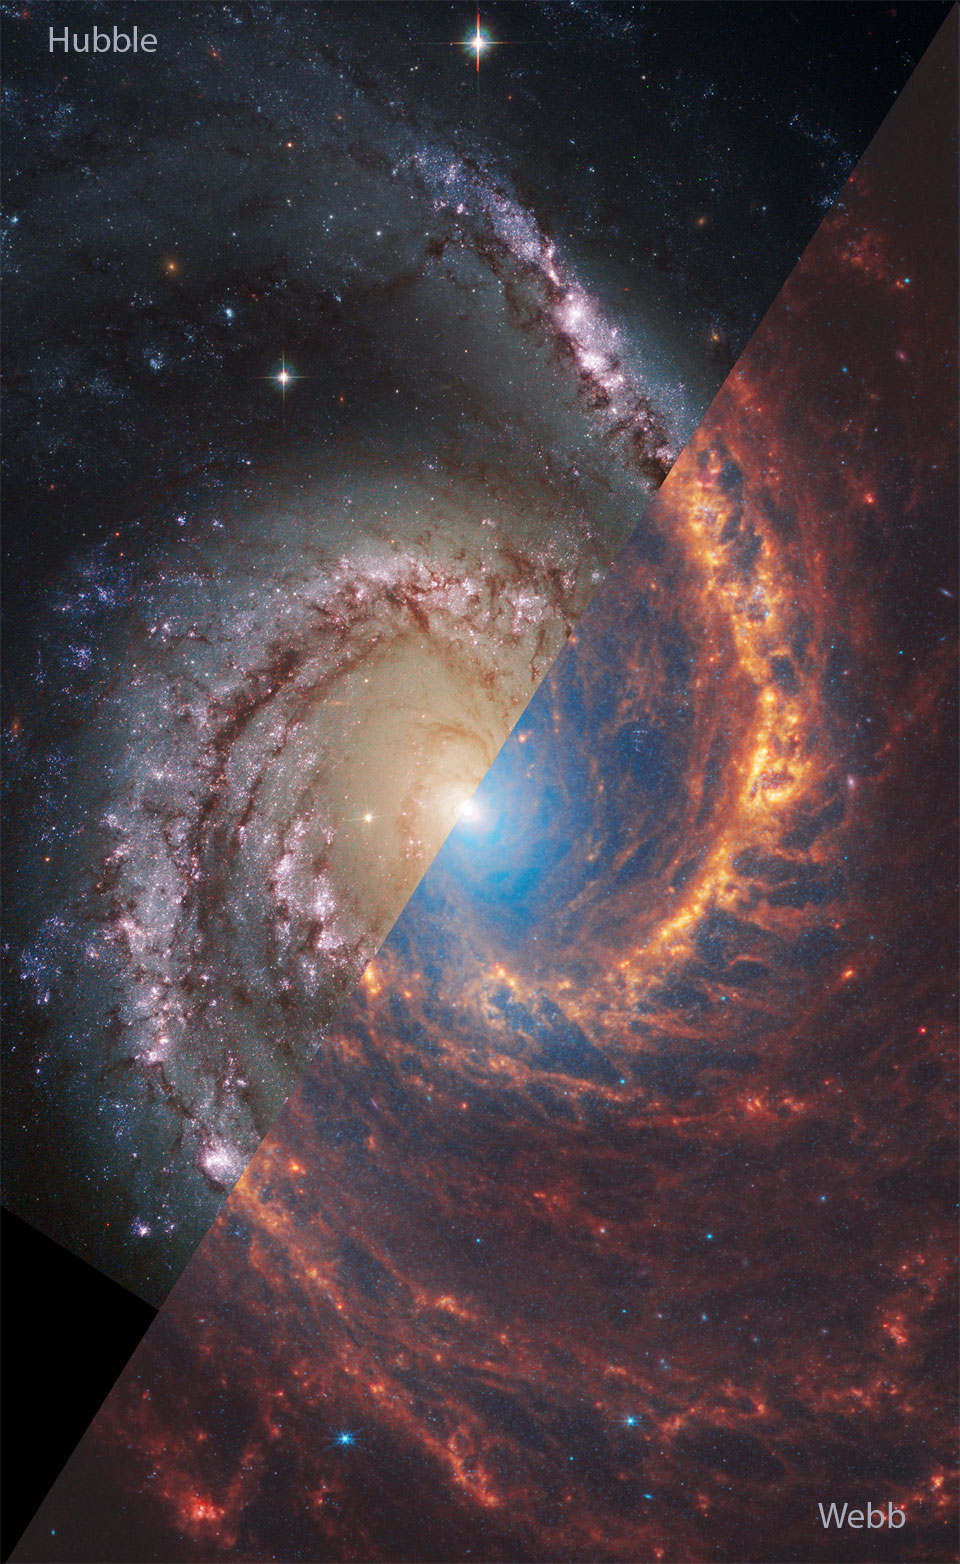 螺旋星系NGC 1566的左上角是哈勃望远镜拍摄的可见光图像，右下角是韦伯望远镜拍摄的红外光图像。一张翻转图像显示了同一个星系，韦伯和哈勃望远镜的部分颠倒了。有关更多详细信息，请参阅说明。